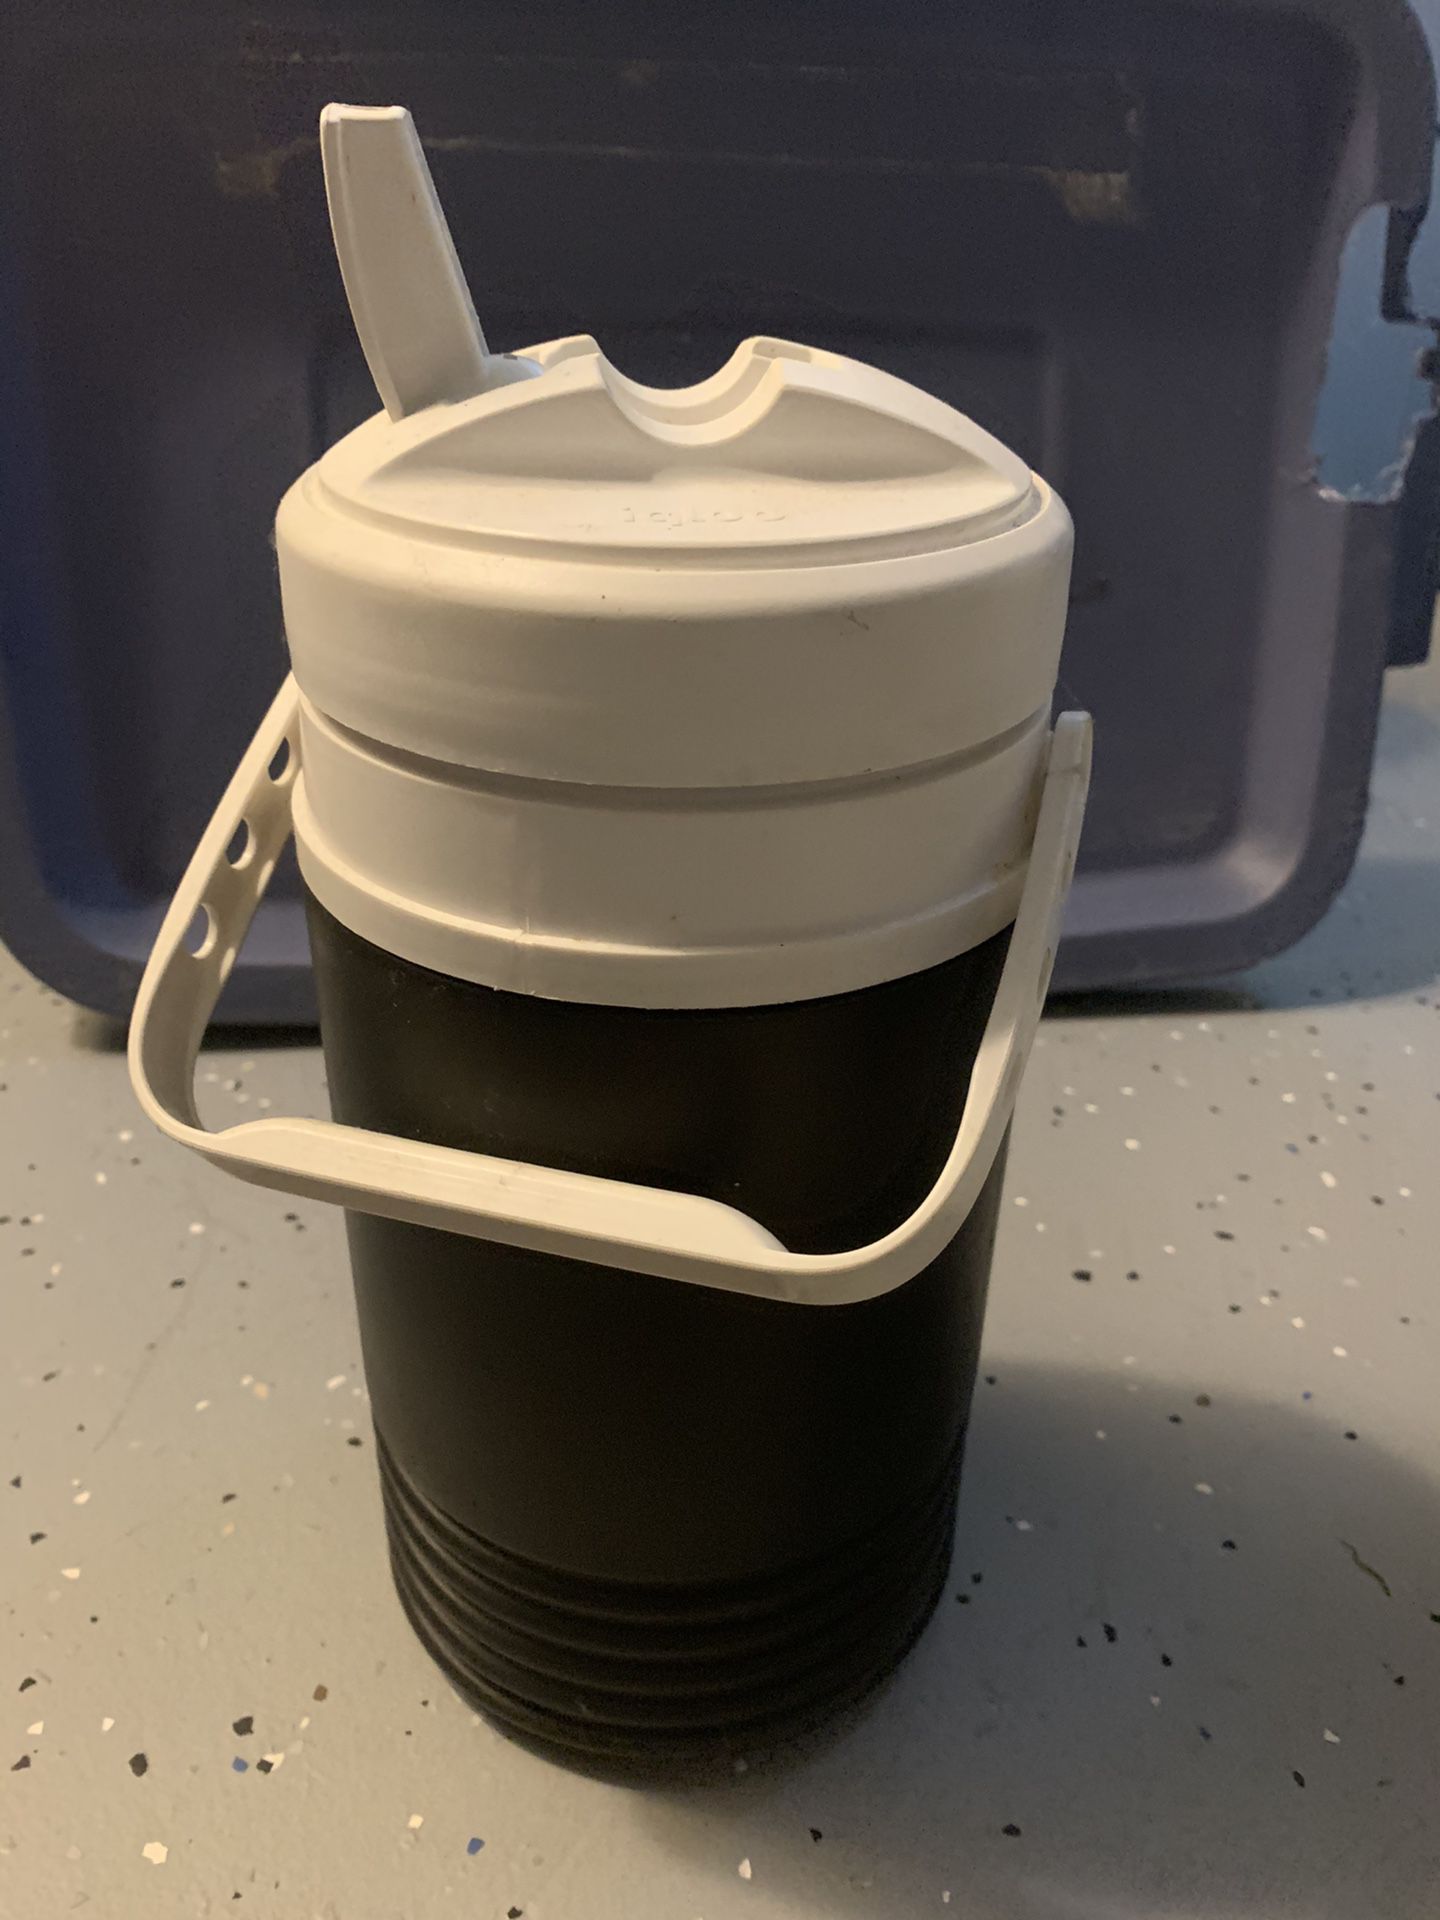 Igloo 1/2 gallon jug cooler